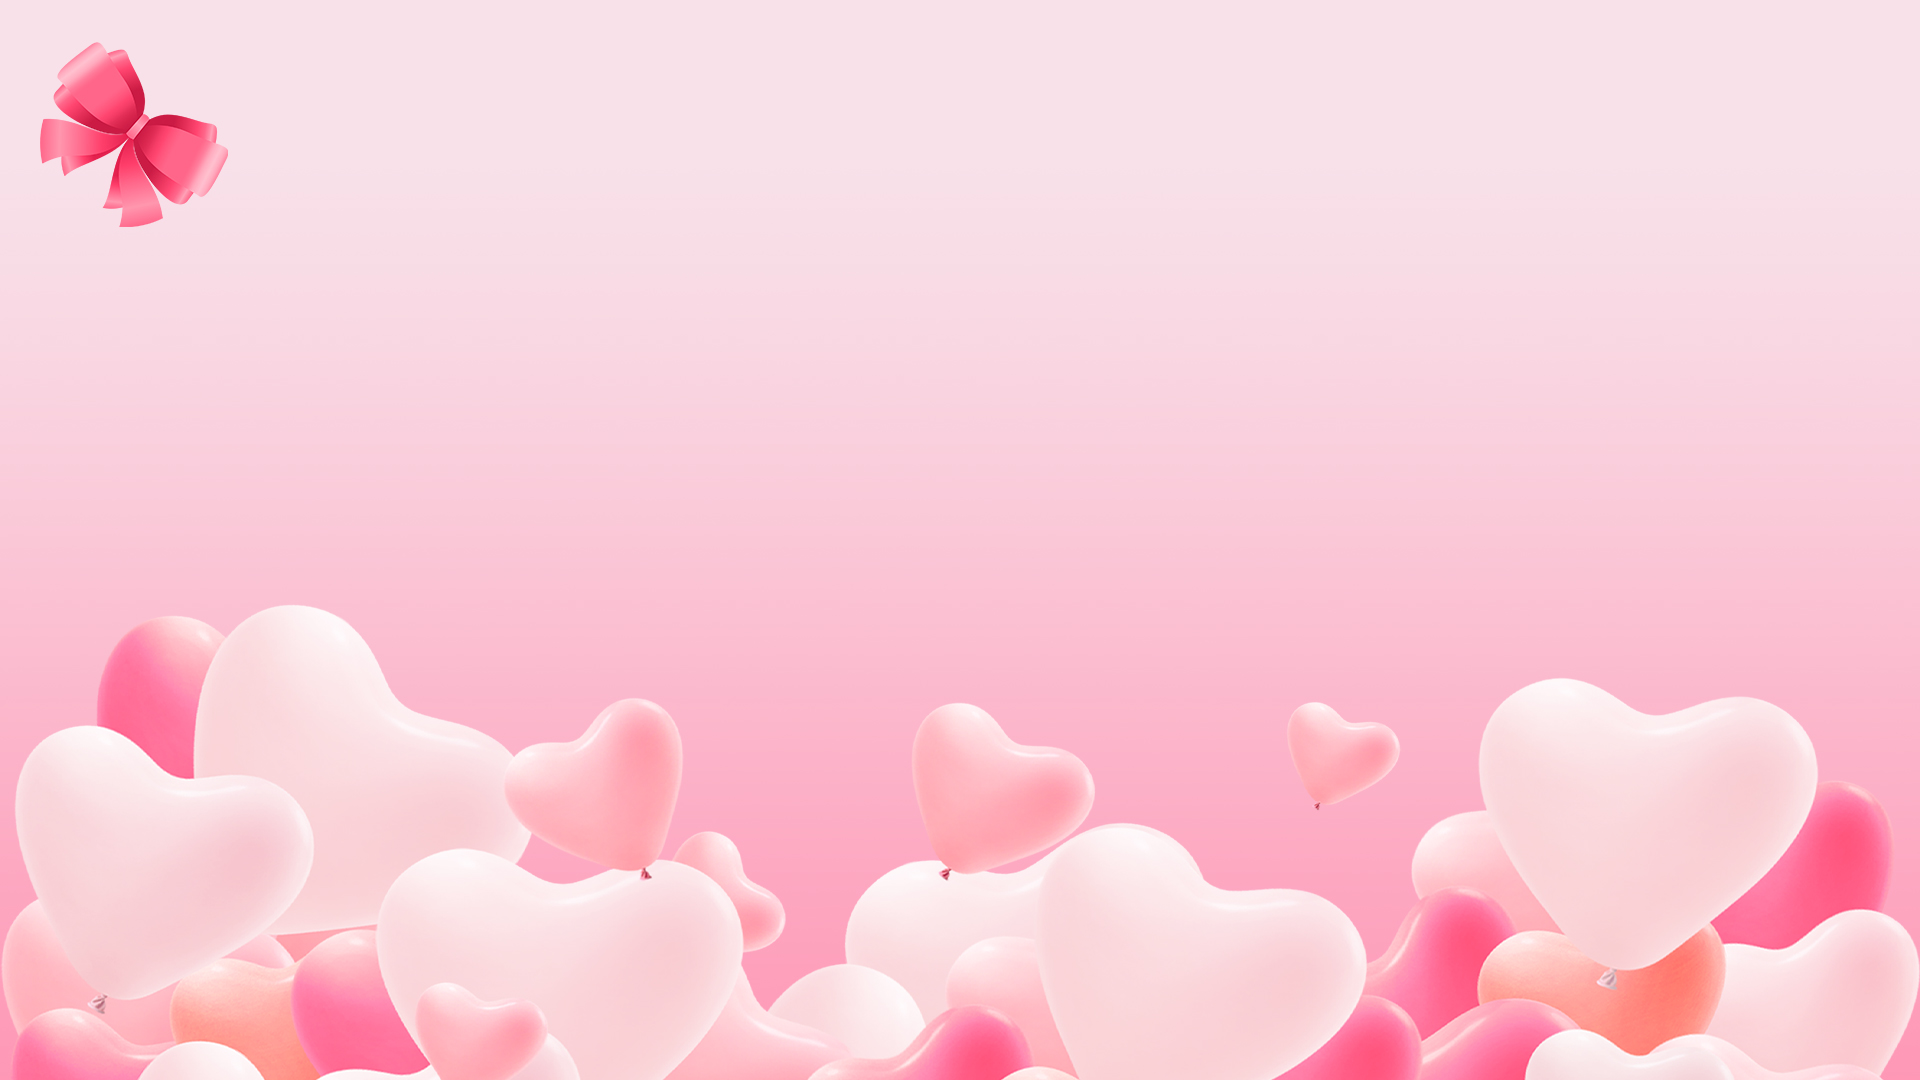 浪漫情人节象征着爱情的粉色爱心壁纸图片大全 - 壁纸 - 亿图全景图库